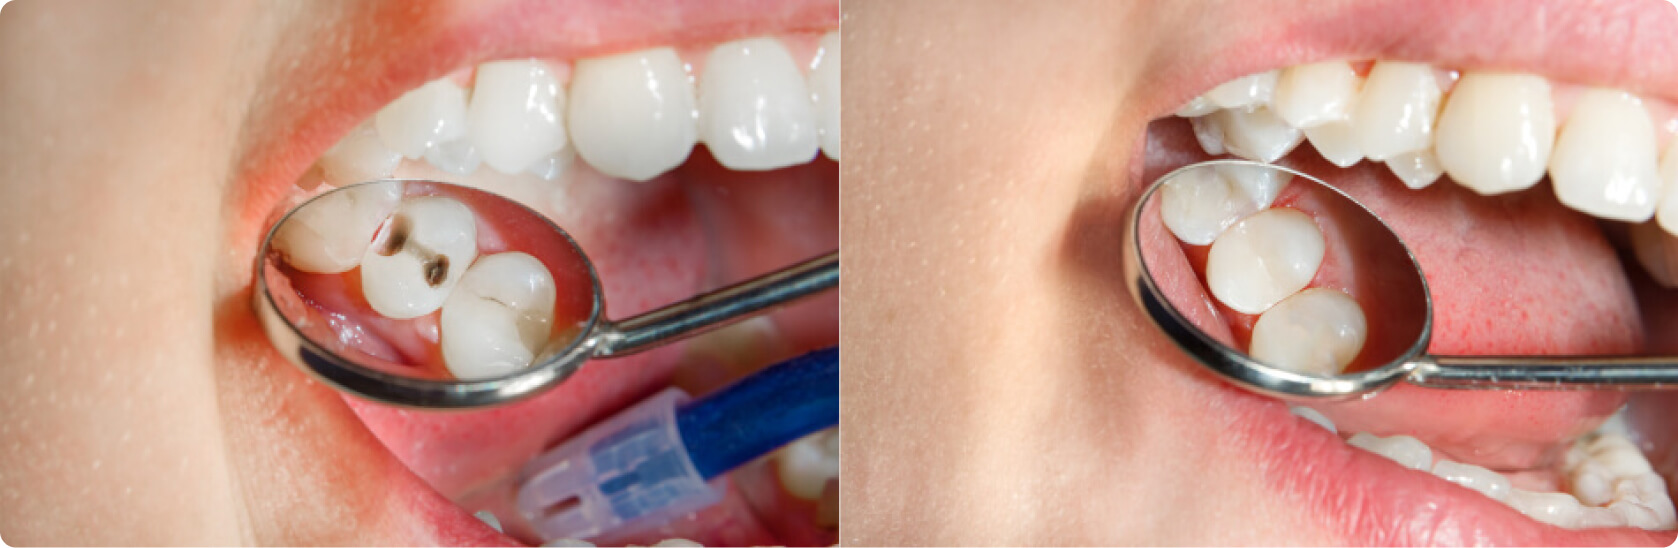 Zahnfüllung - Was ist eine Zahnfüllung?